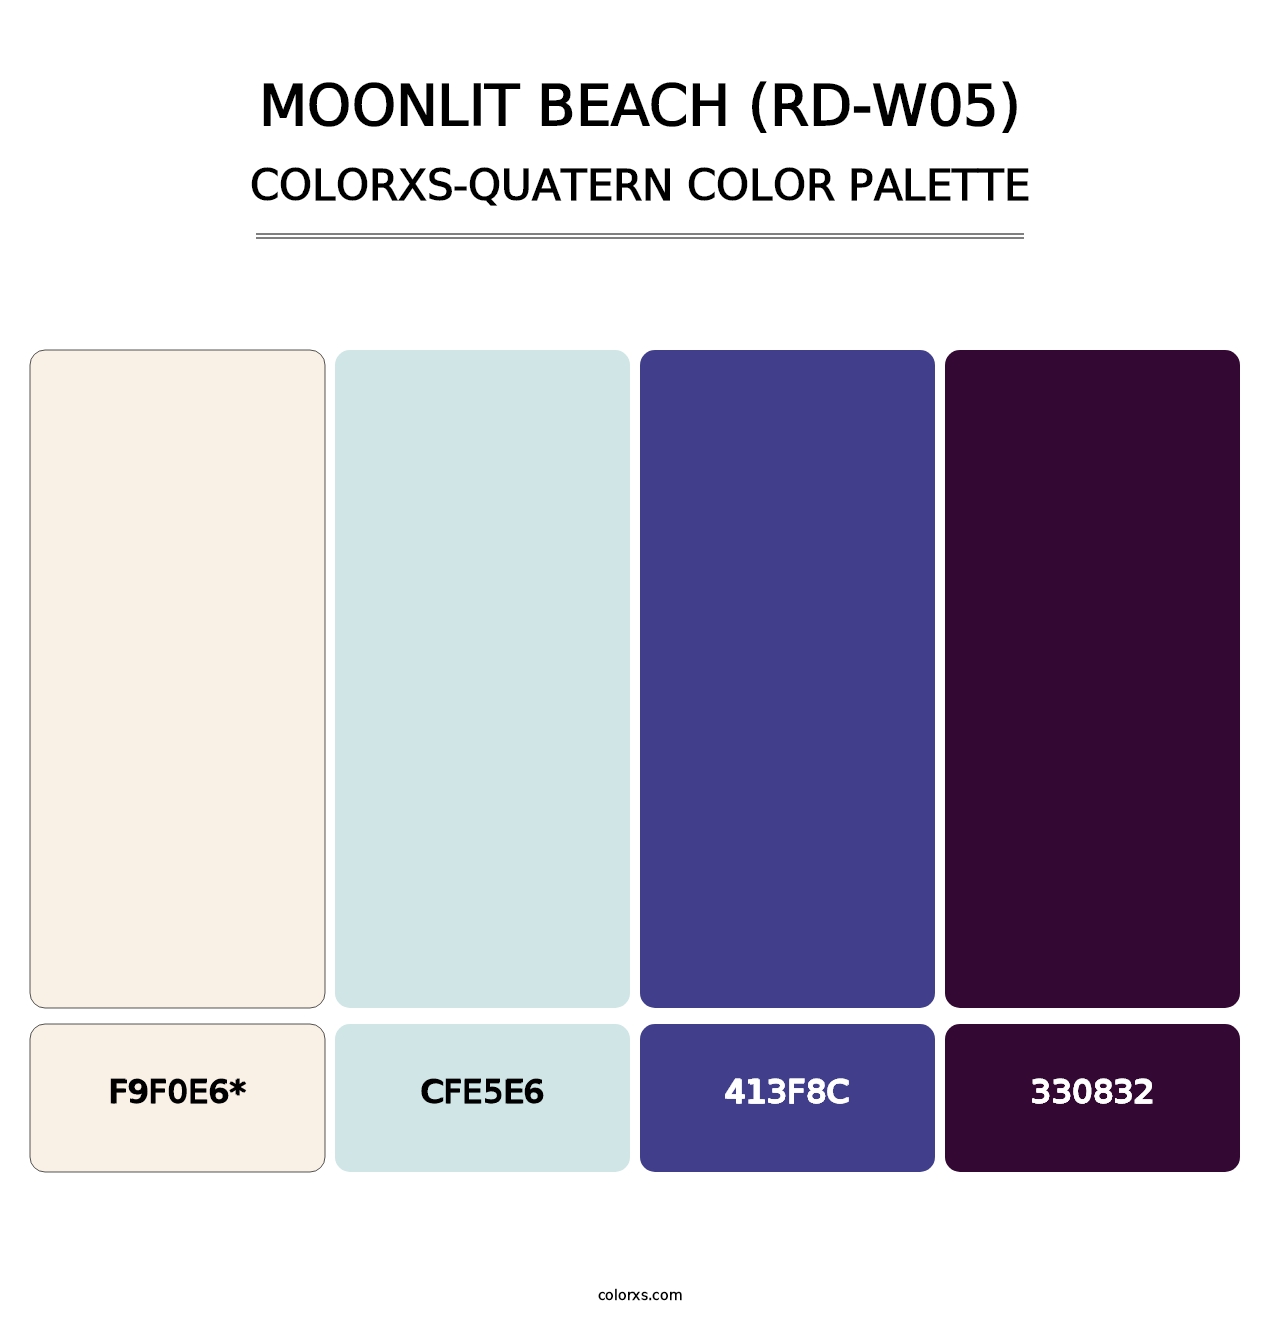 Moonlit Beach (RD-W05) - Colorxs Quad Palette